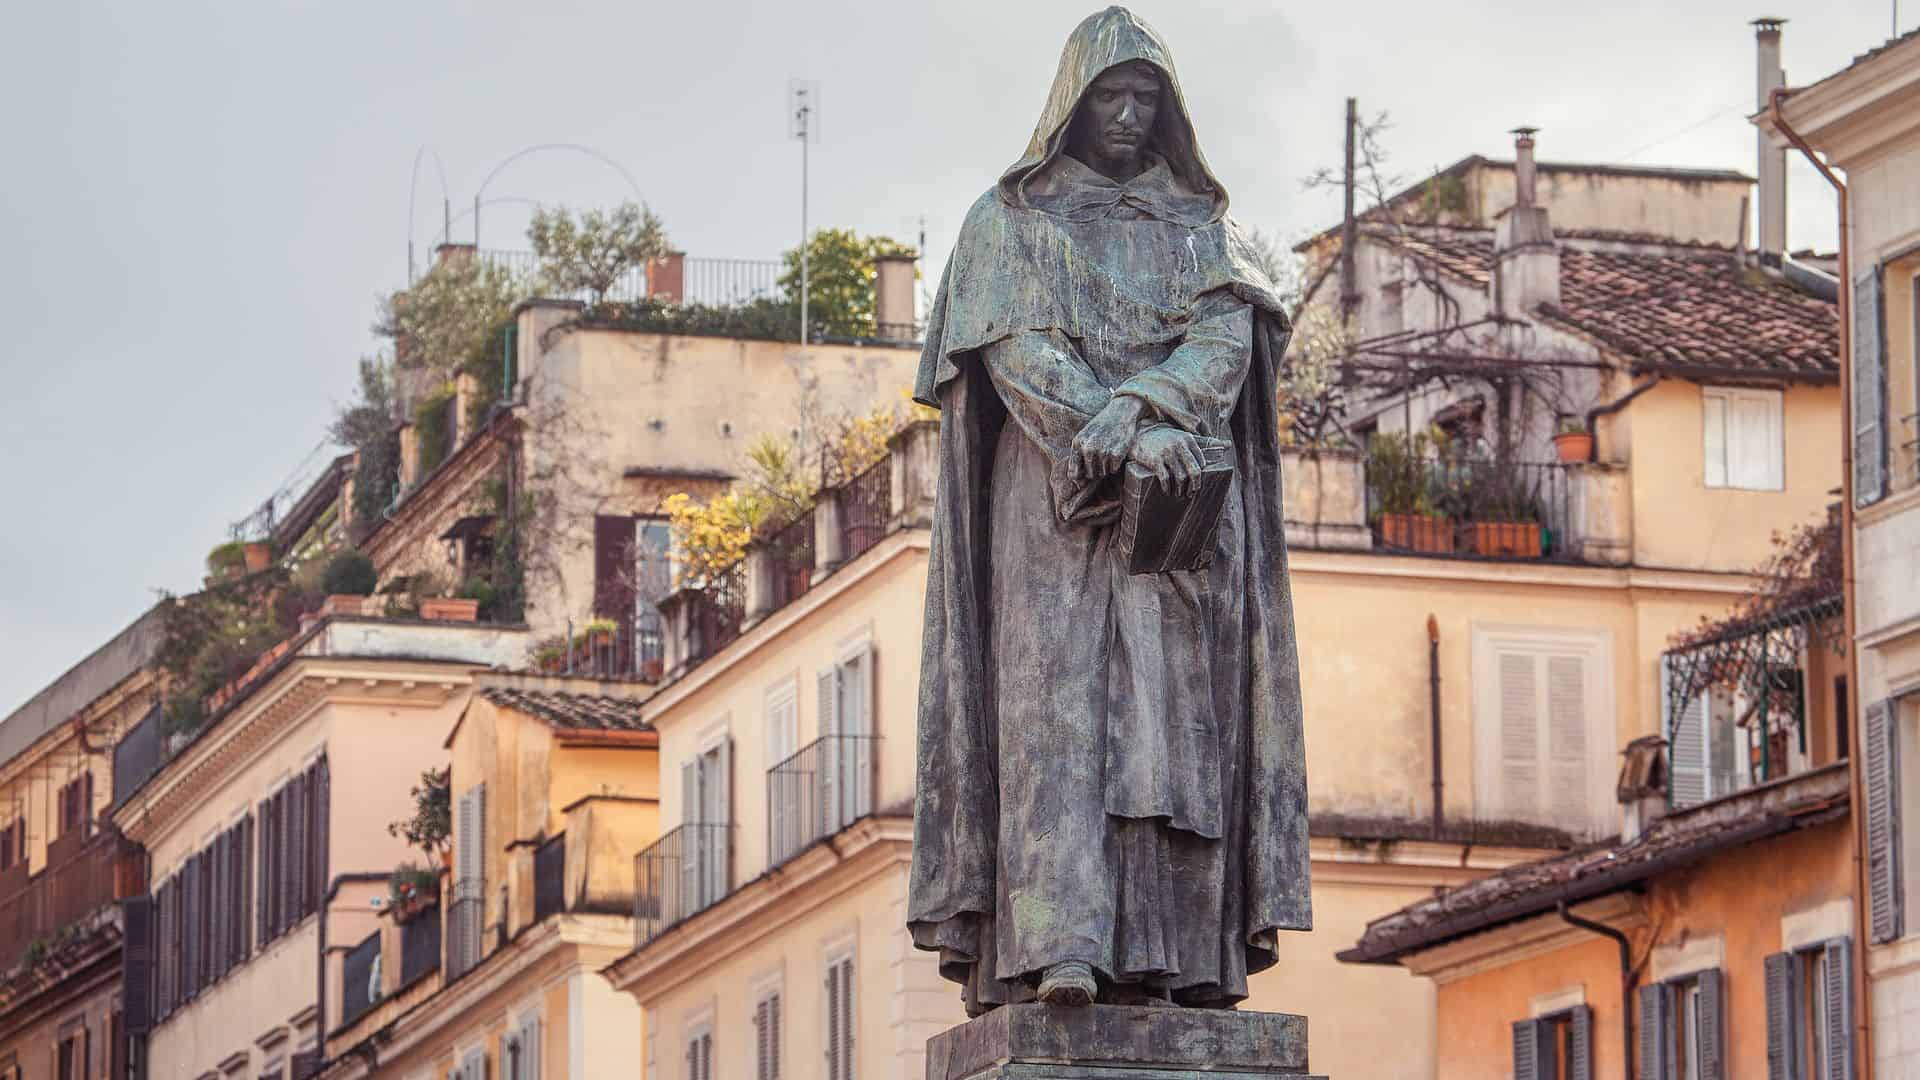 Statue of Giordano Bruno erected at Campo de' Fiori in Rome